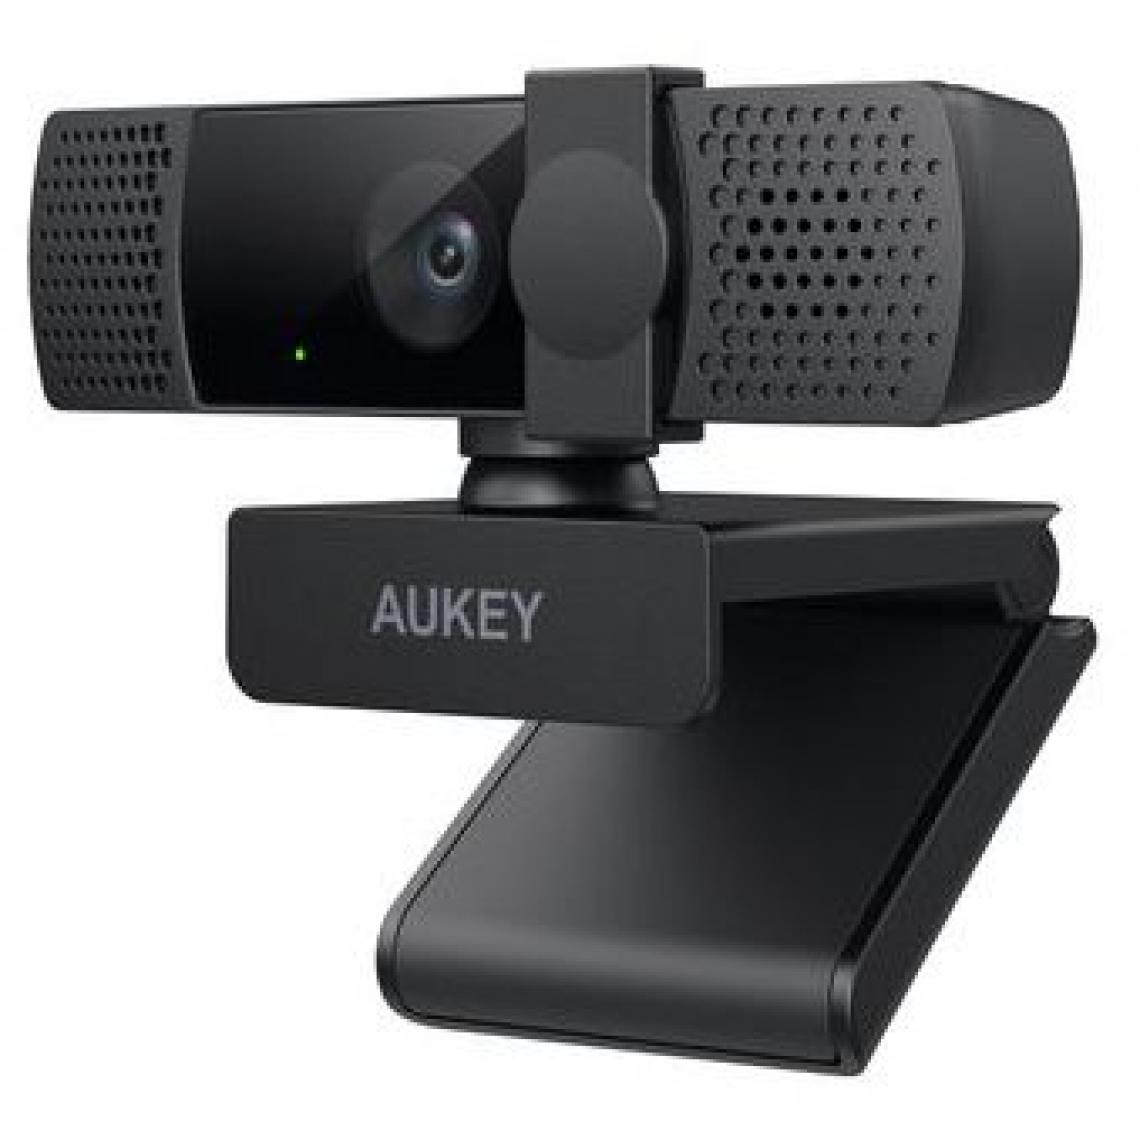 Inconnu - AUKEY PC-LM7 webcam 2 MP 1920 x 1080 pixels USB Noir - Webcam